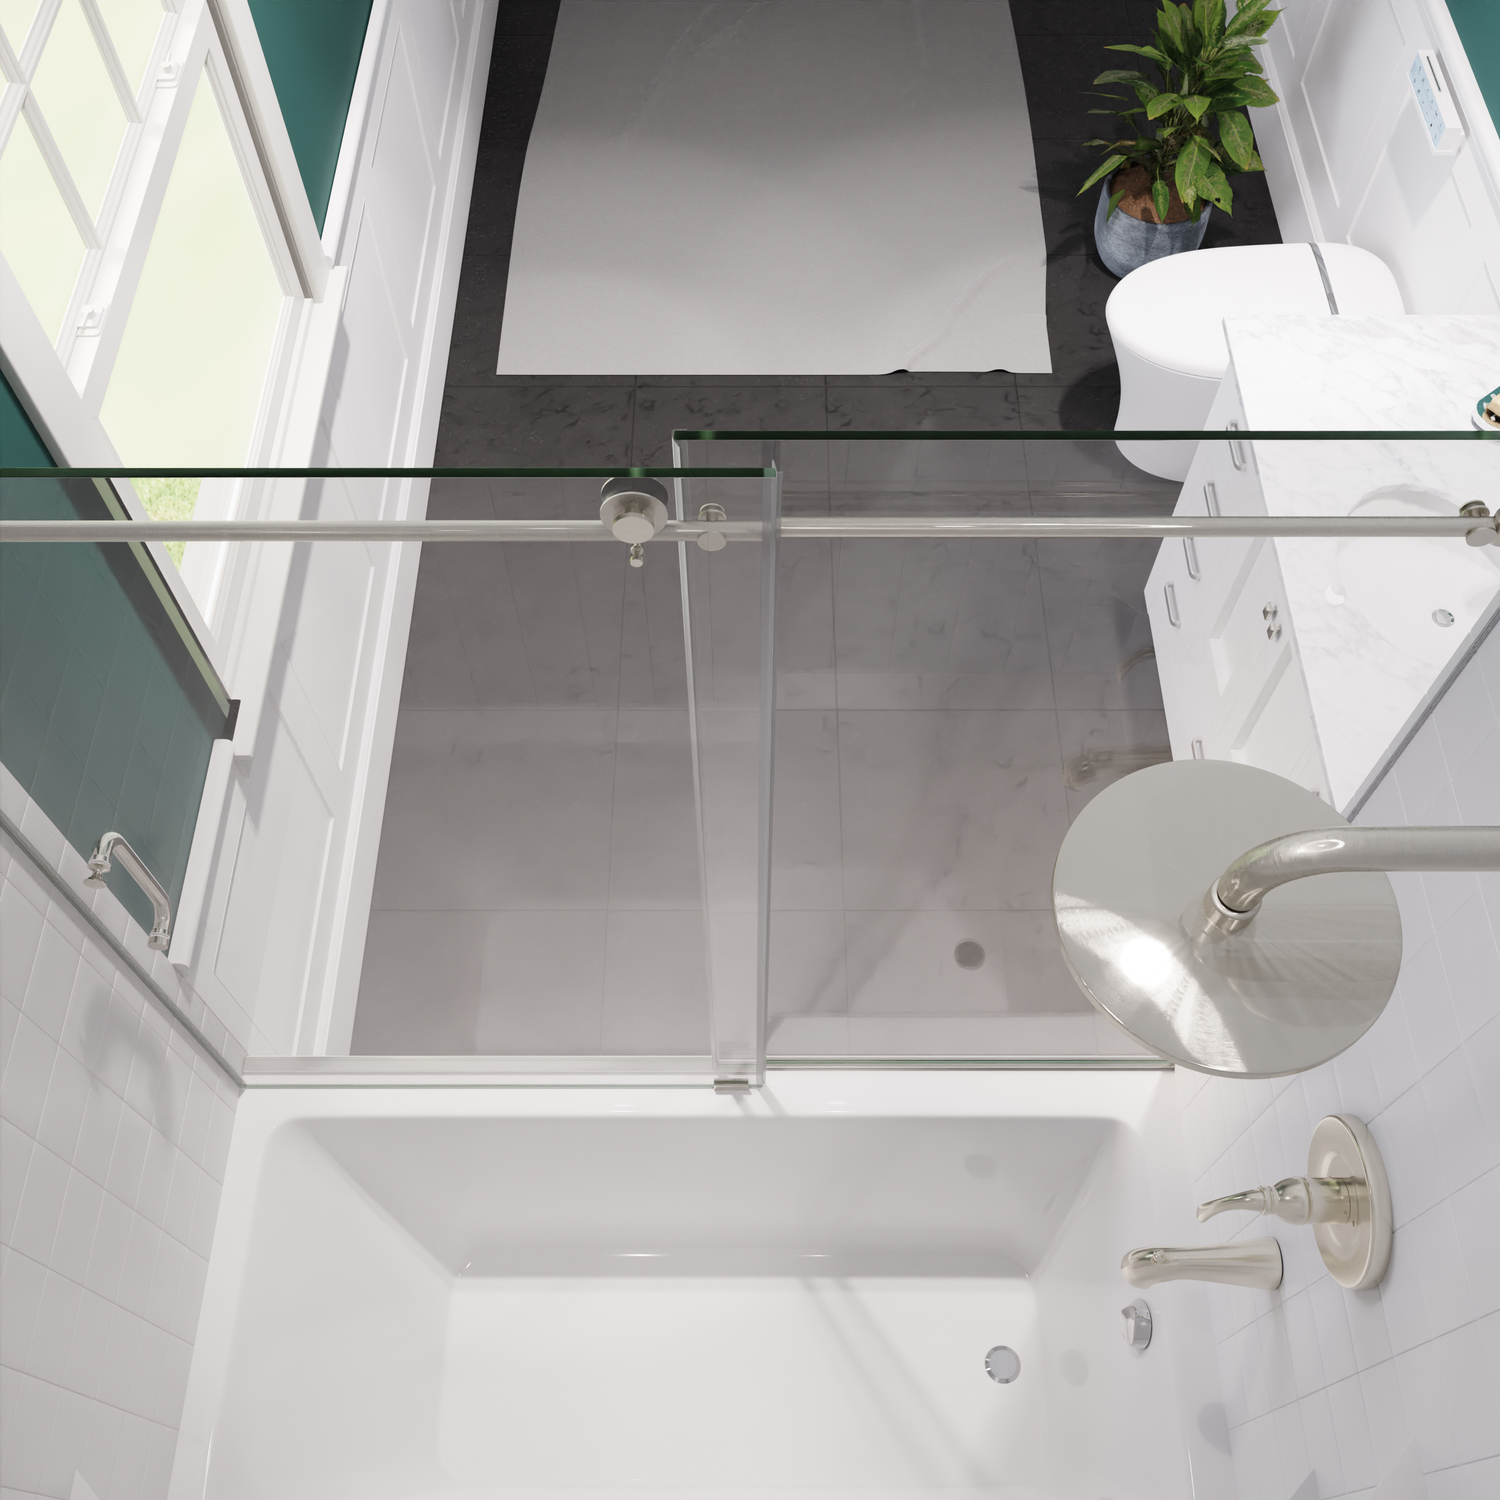 bathtub glass door enclosures Anzzi SHOWER - Tubs Doors - Sliding Nickel